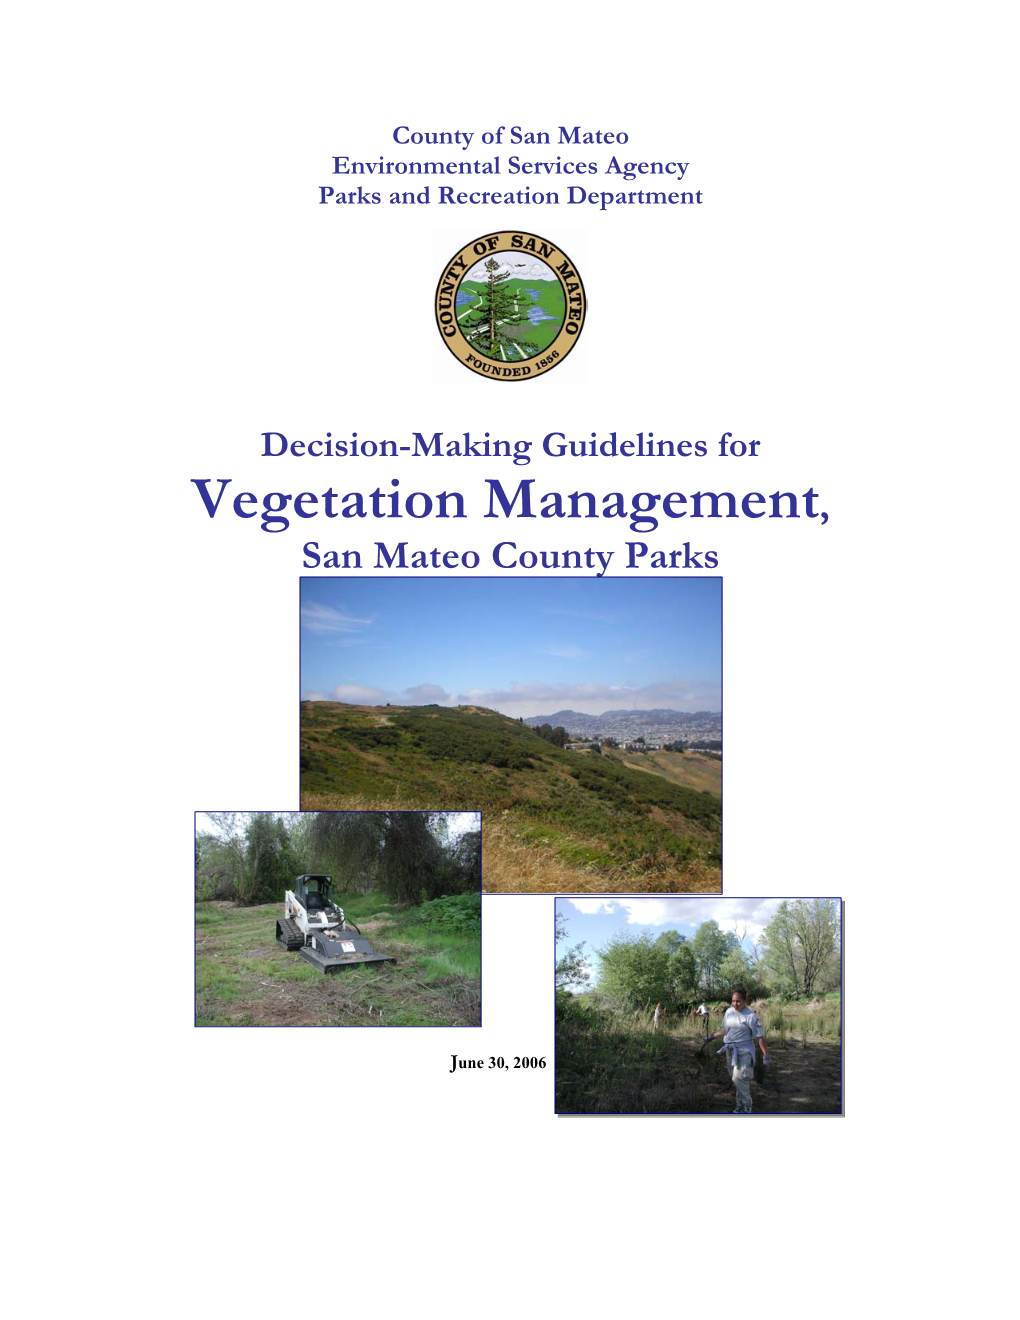 Vegetation Management Guidelines